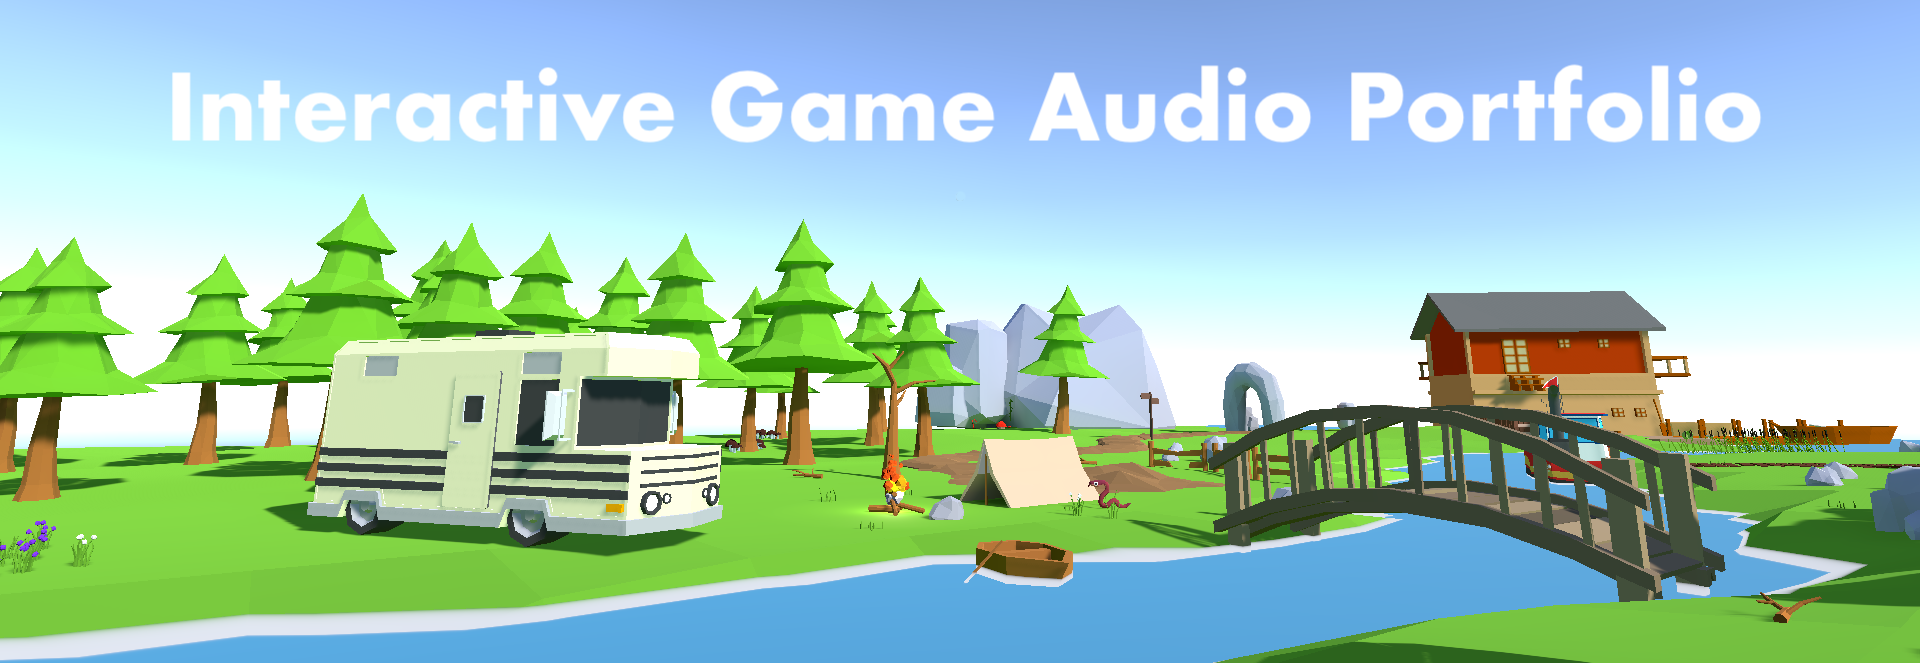 Interactive Game Audio Portfolio